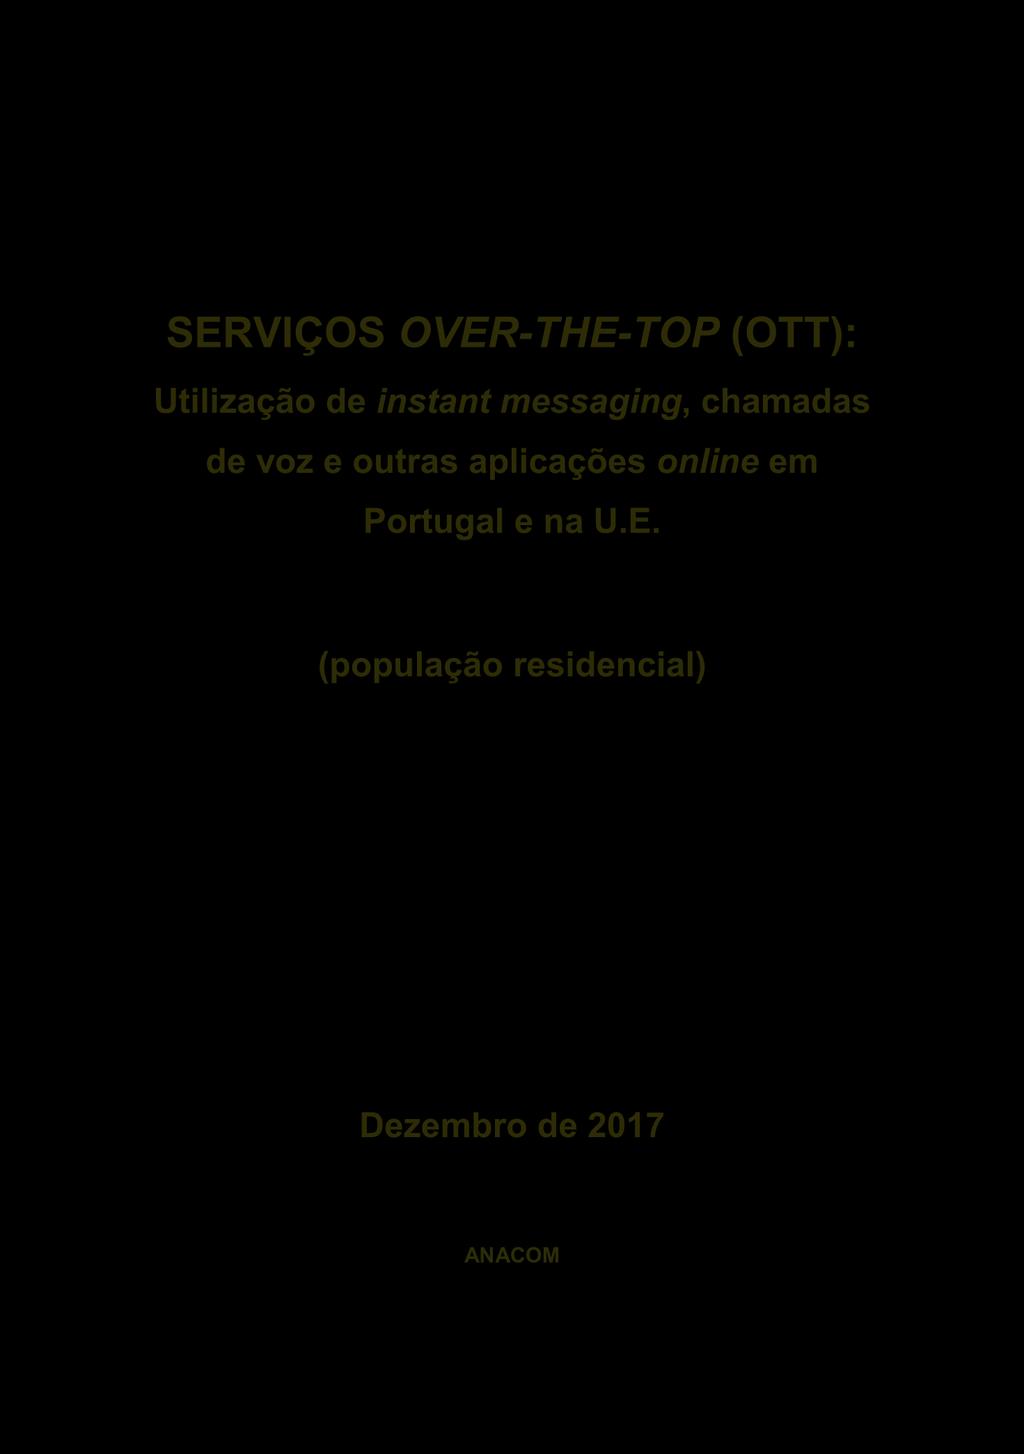 SERVIÇOS OVER-THE-TOP (OTT): Utilização de instant messaging, chamadas de voz e